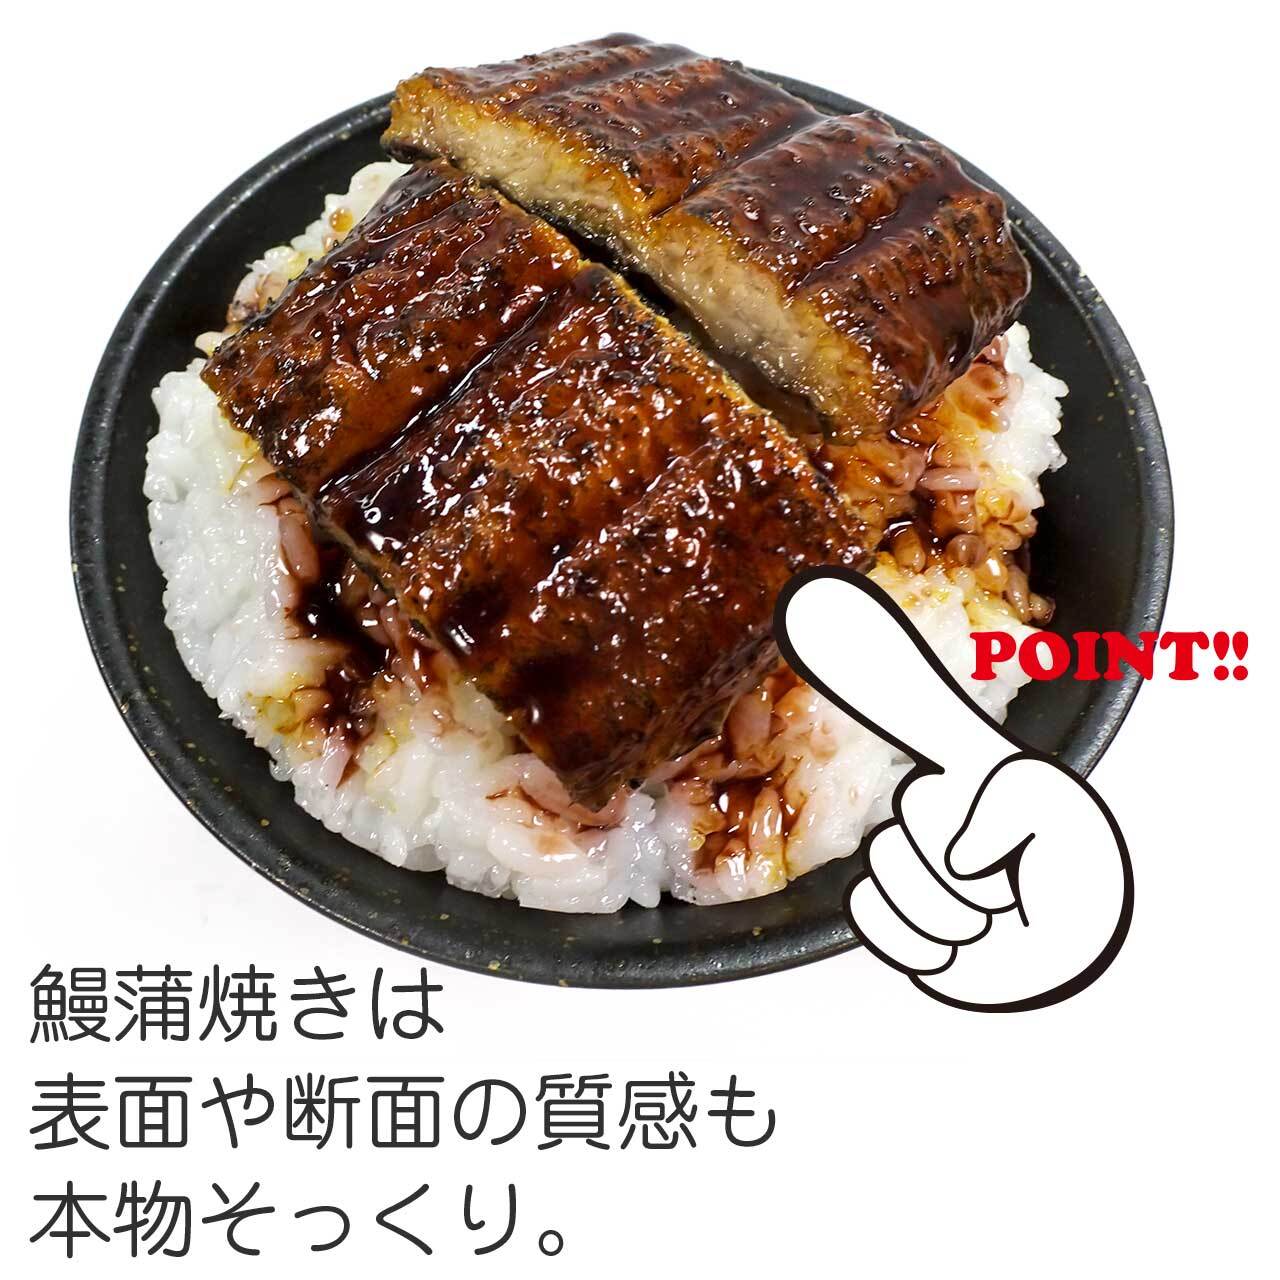 鰻ご飯 食品サンプル ディスプレイ用 ココナッツ・アクセサリー